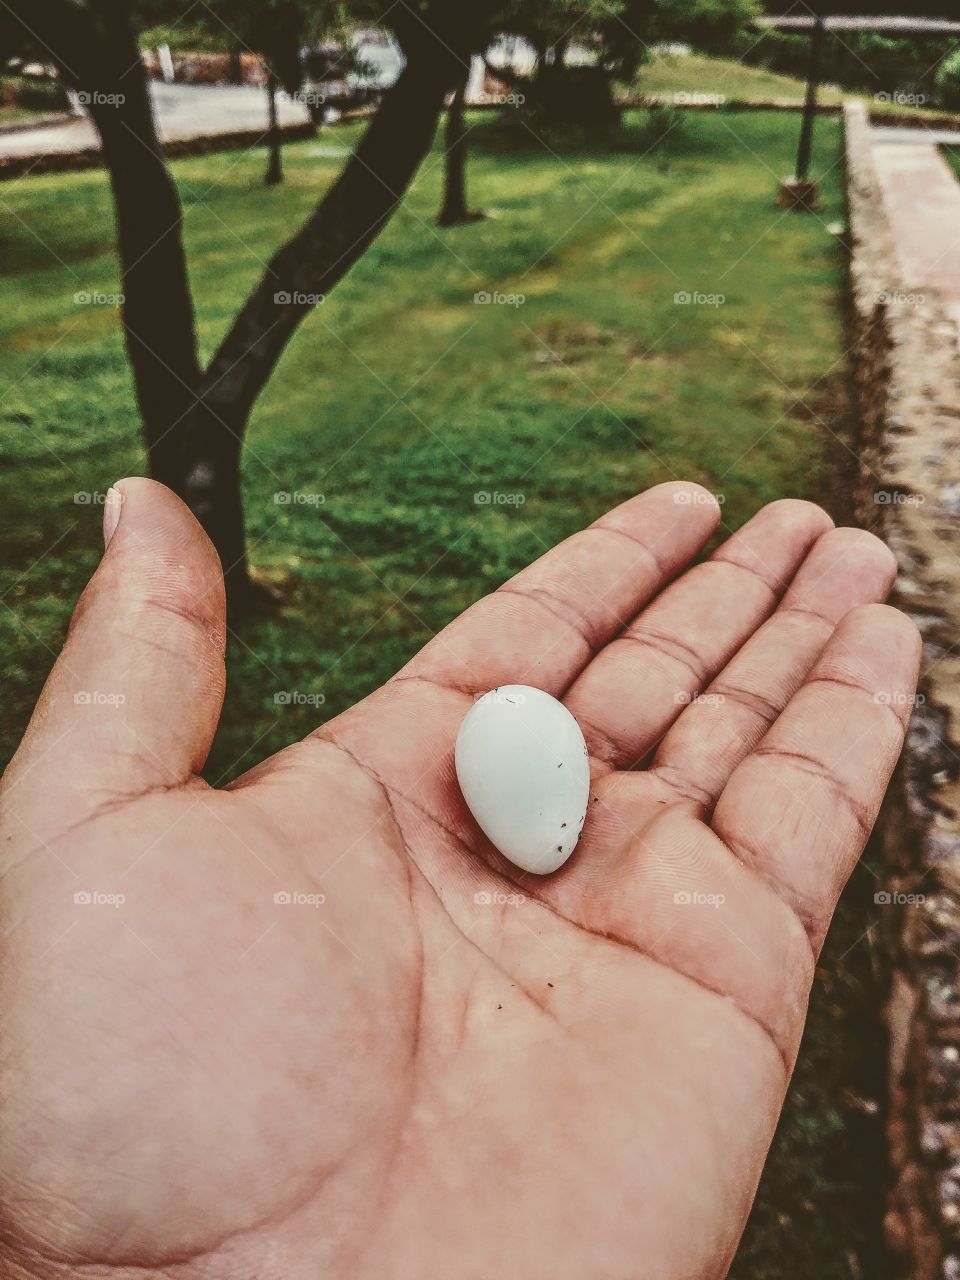 Little egg